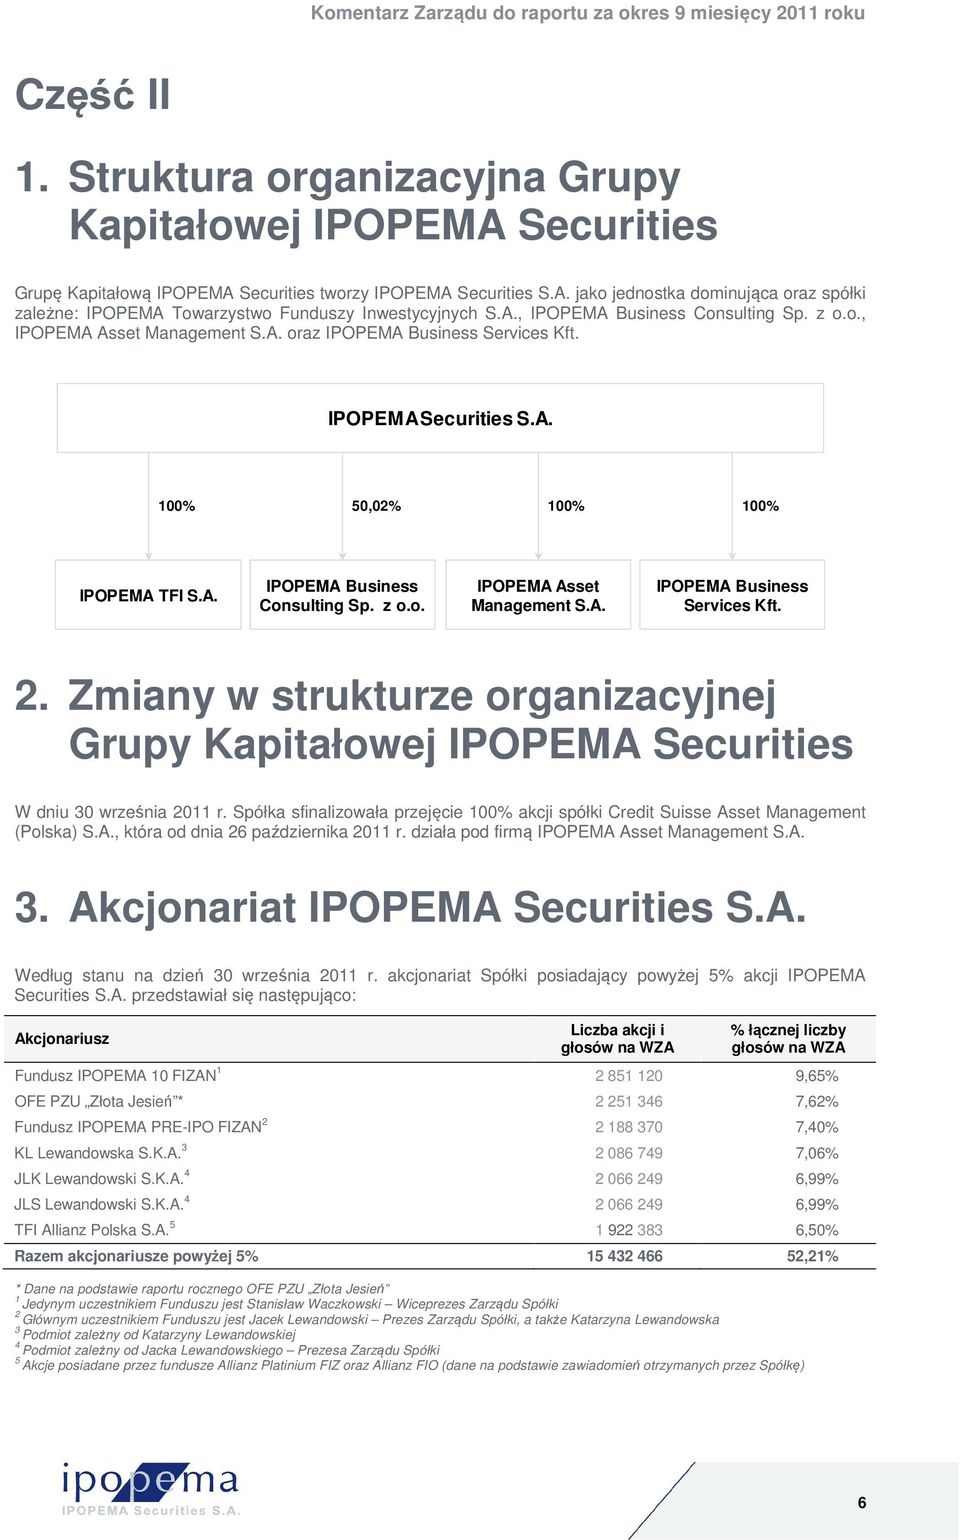 Zmiany w strukturze organizacyjnej Grupy Kapitałowej IPOPEMA Securities W dniu 30 września 2011 r. Spółka sfinalizowała przejęcie 100% akcji spółki Credit Suisse Asset Management (Polska) S.A., która od dnia 26 października 2011 r.